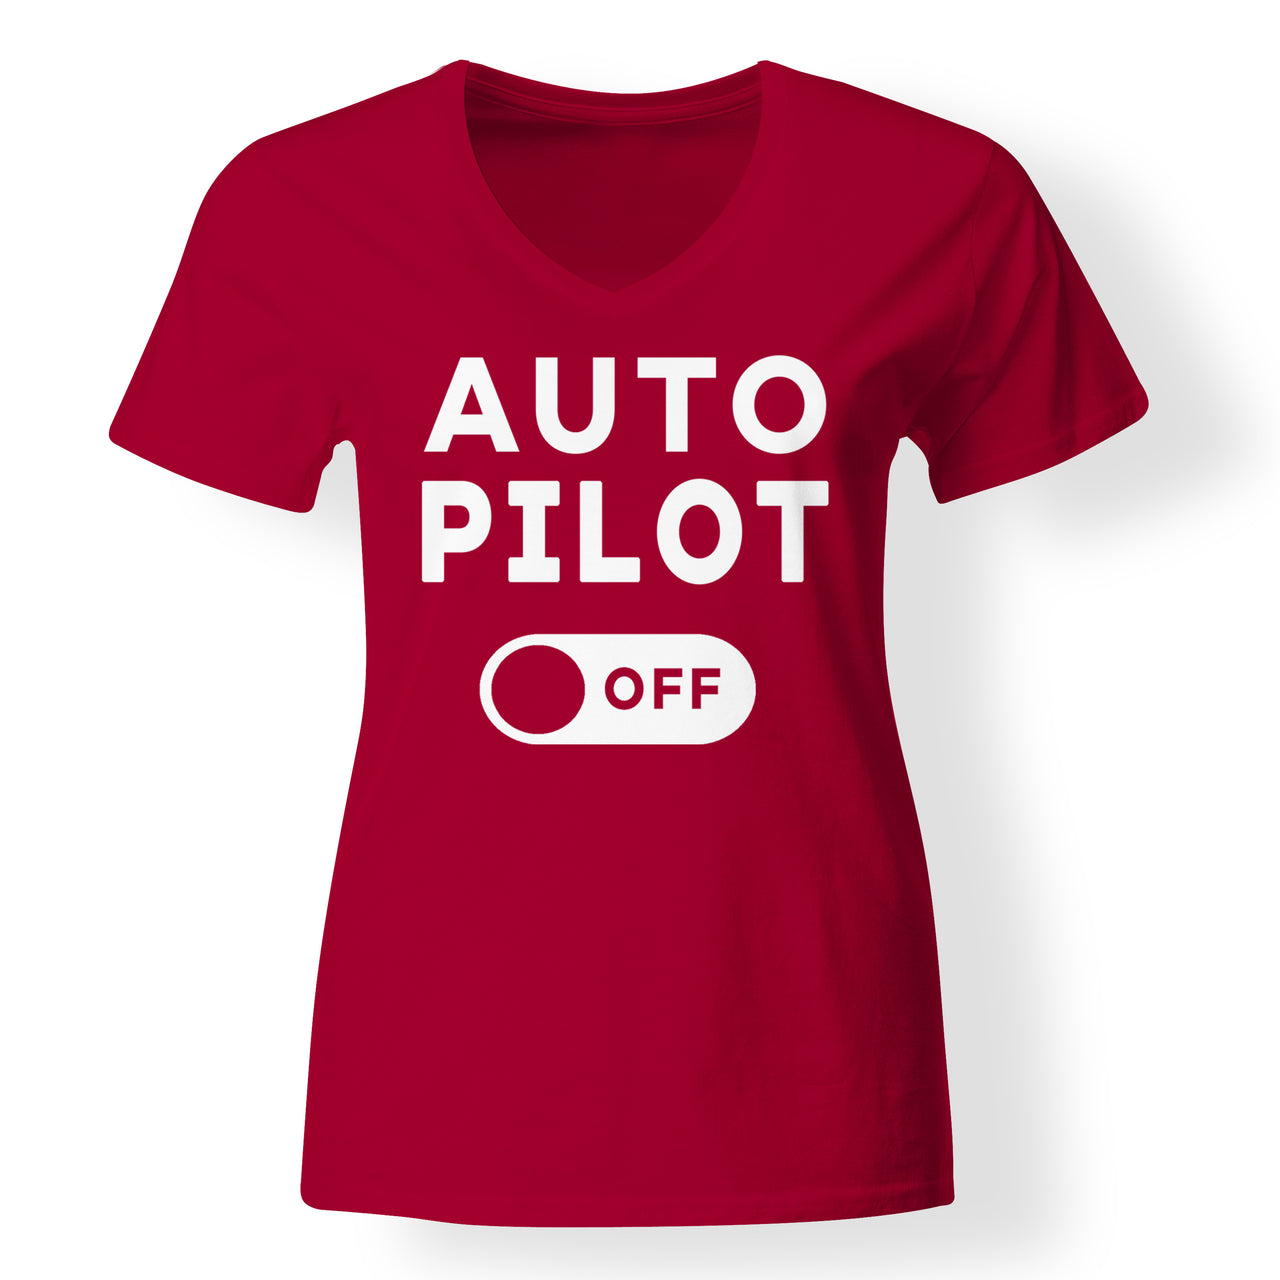 Auto Pilot Off Designed V-Neck T-Shirts